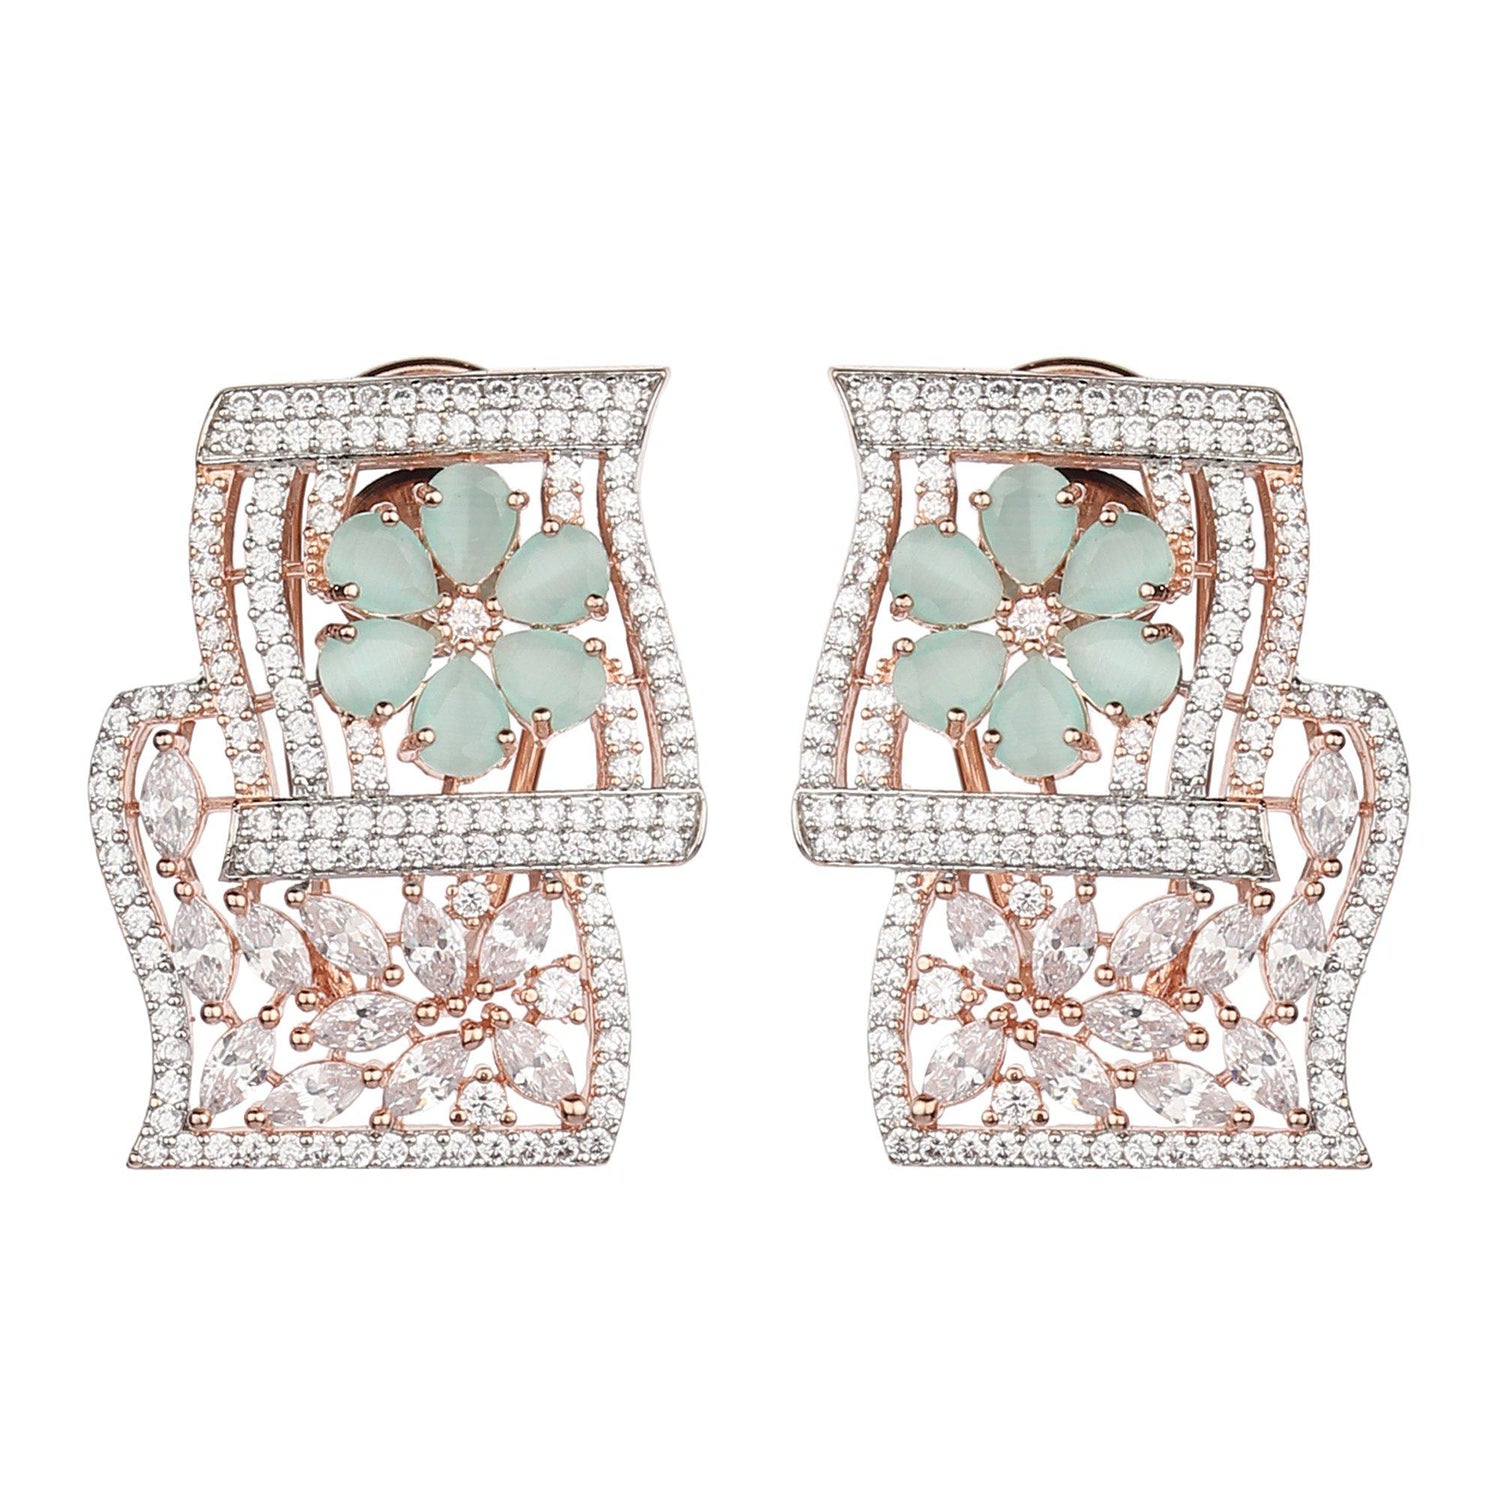 Double Square Elegant Studded Earrings-Earrings-ONESKYSHOP